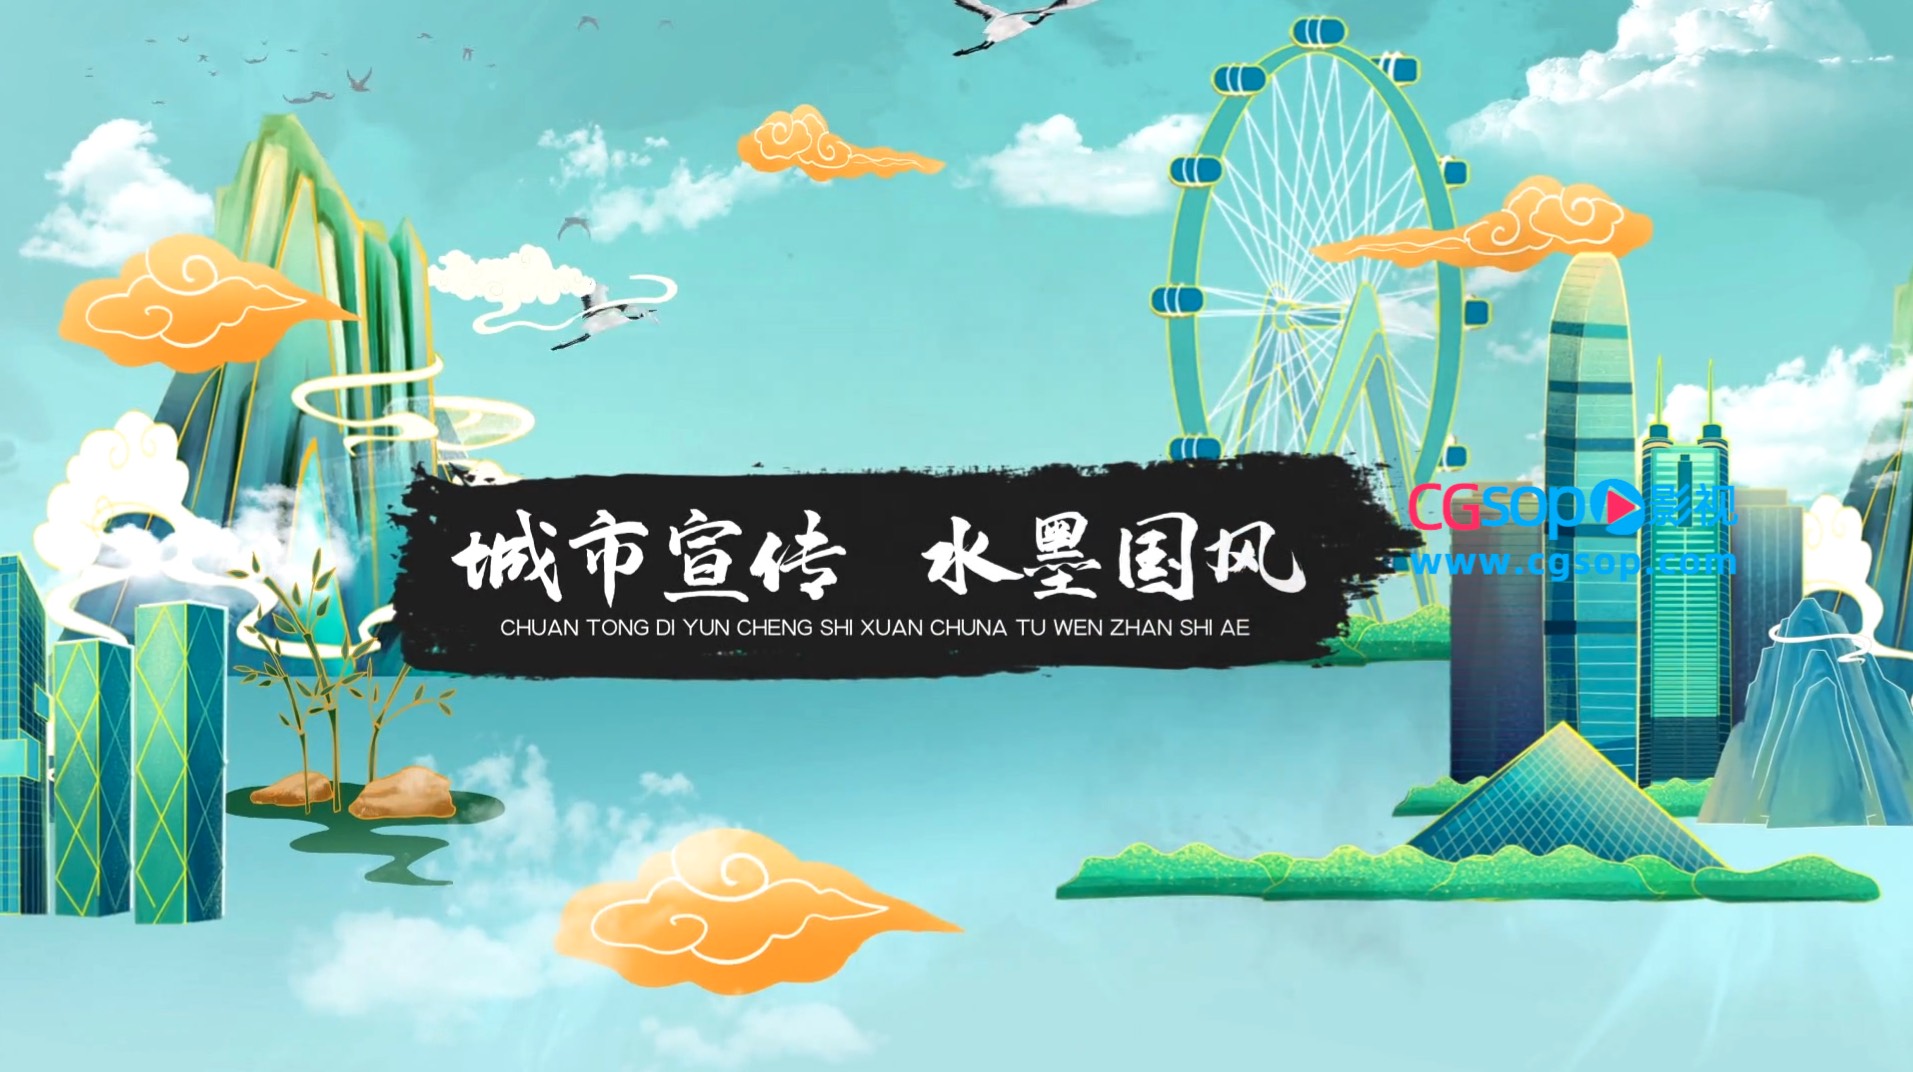 中国风图文展示水墨卷轴城市宣传AE模板